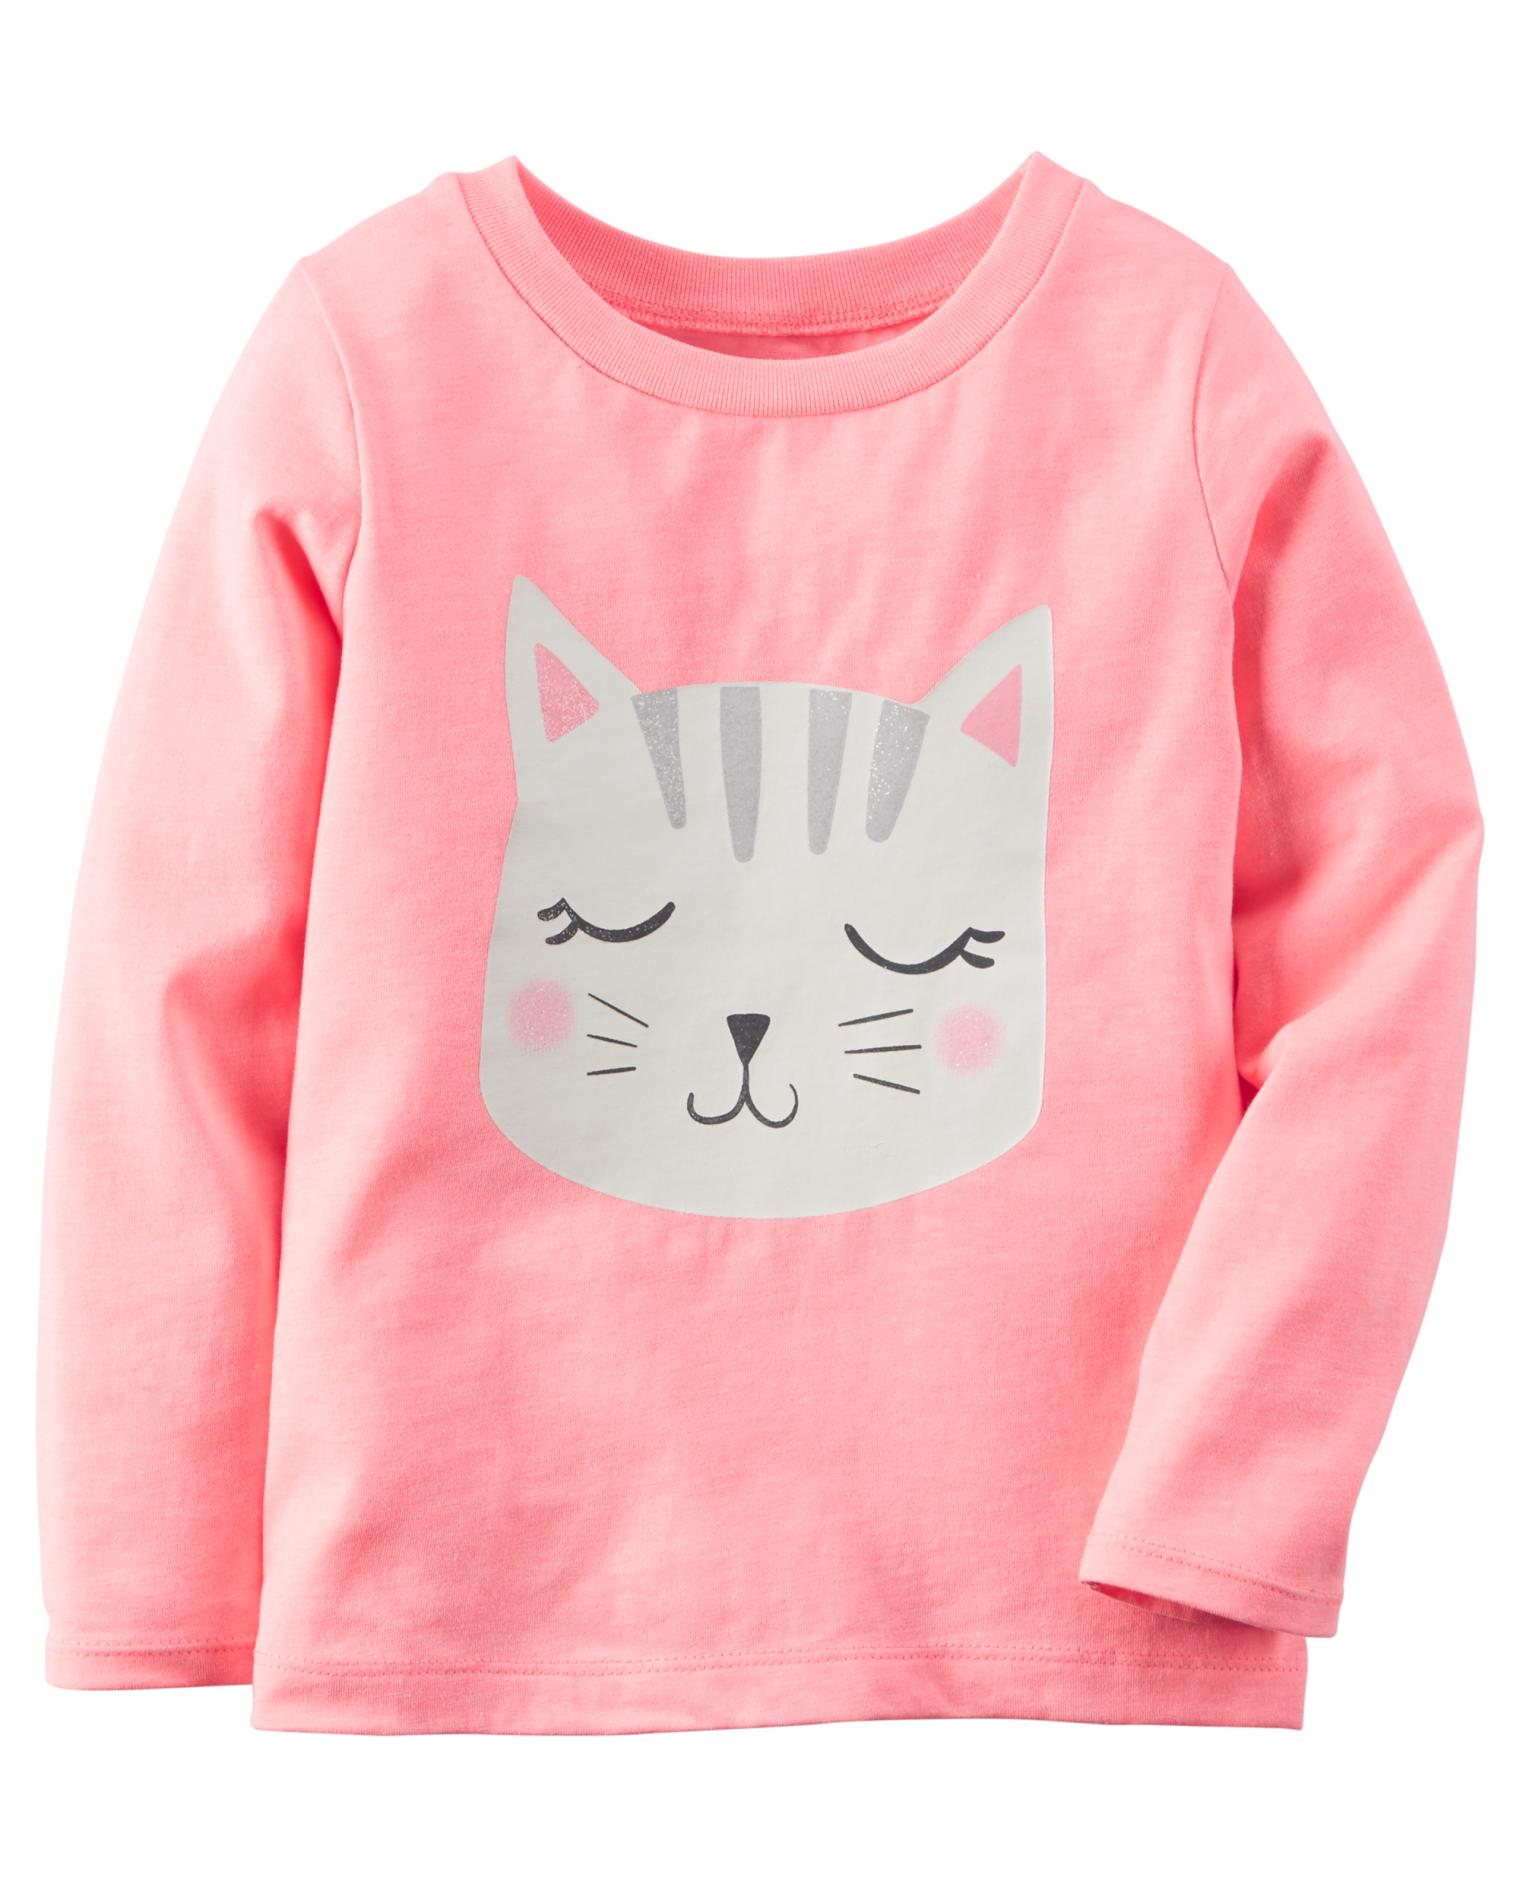 Carter's Girls' Long-Sleeve Graphic T-Shirt - Cat